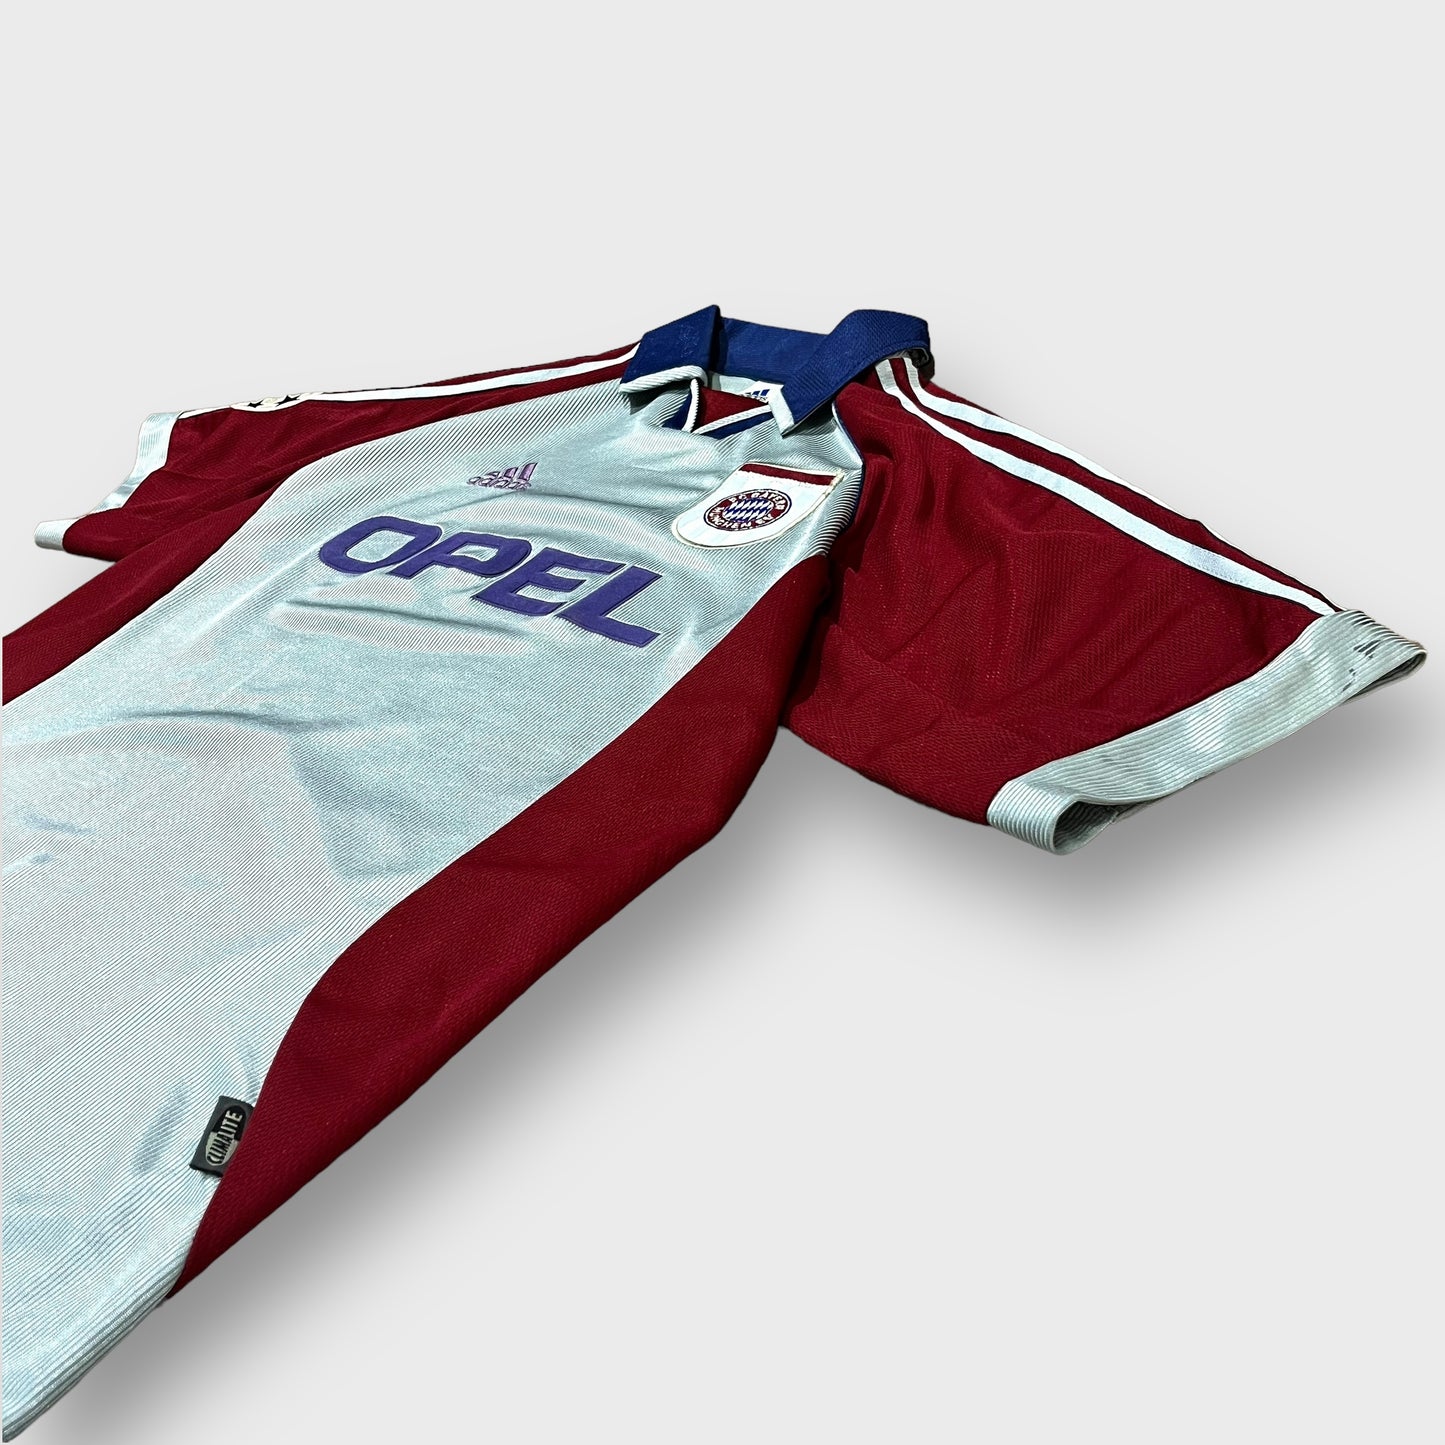 90’s “BAYERN MUNICH”soccer shirt